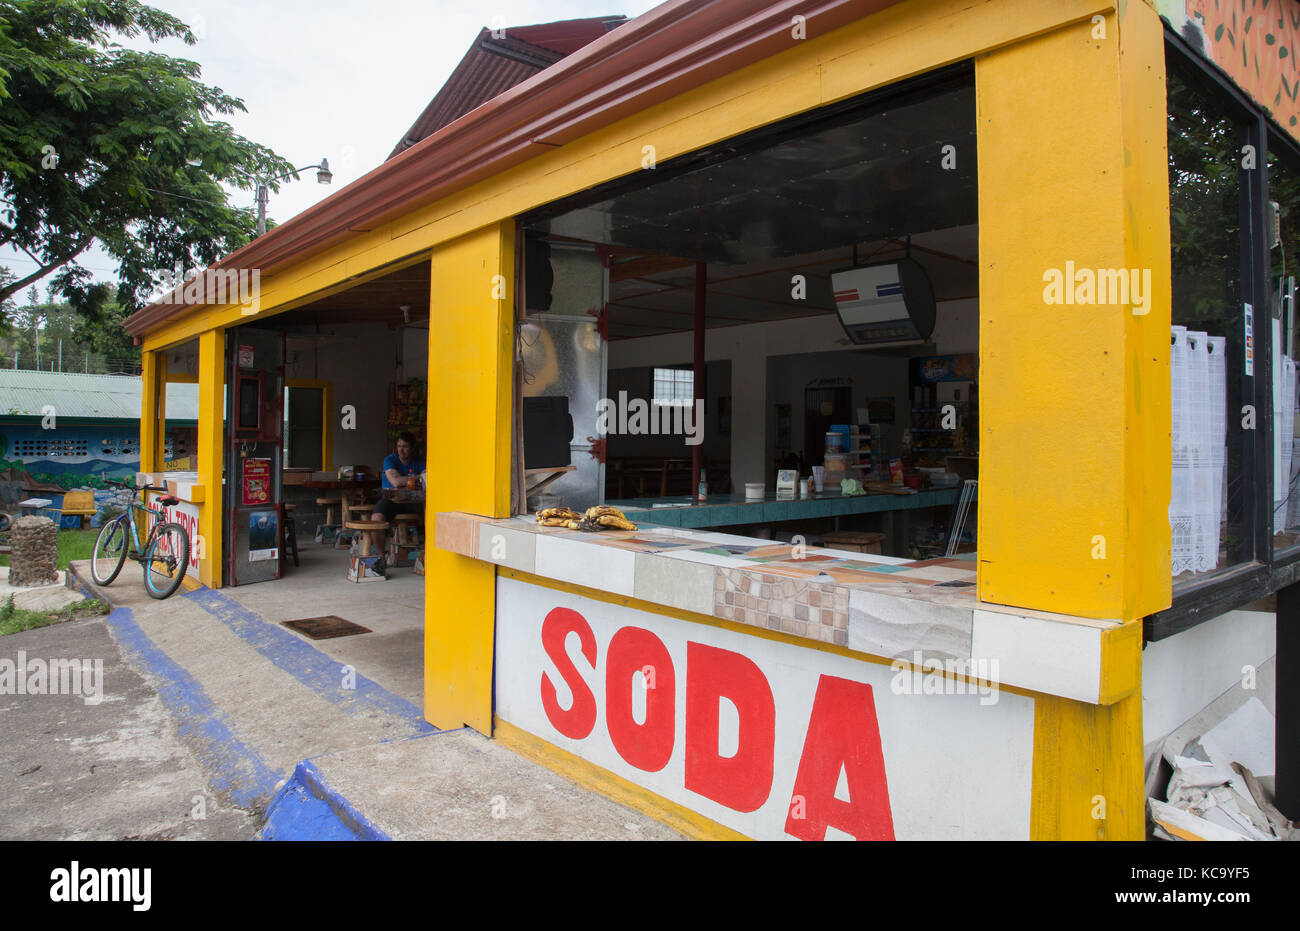 Comida Tipica presso un negozio di Soda mercato in Costa Rica Foto Stock